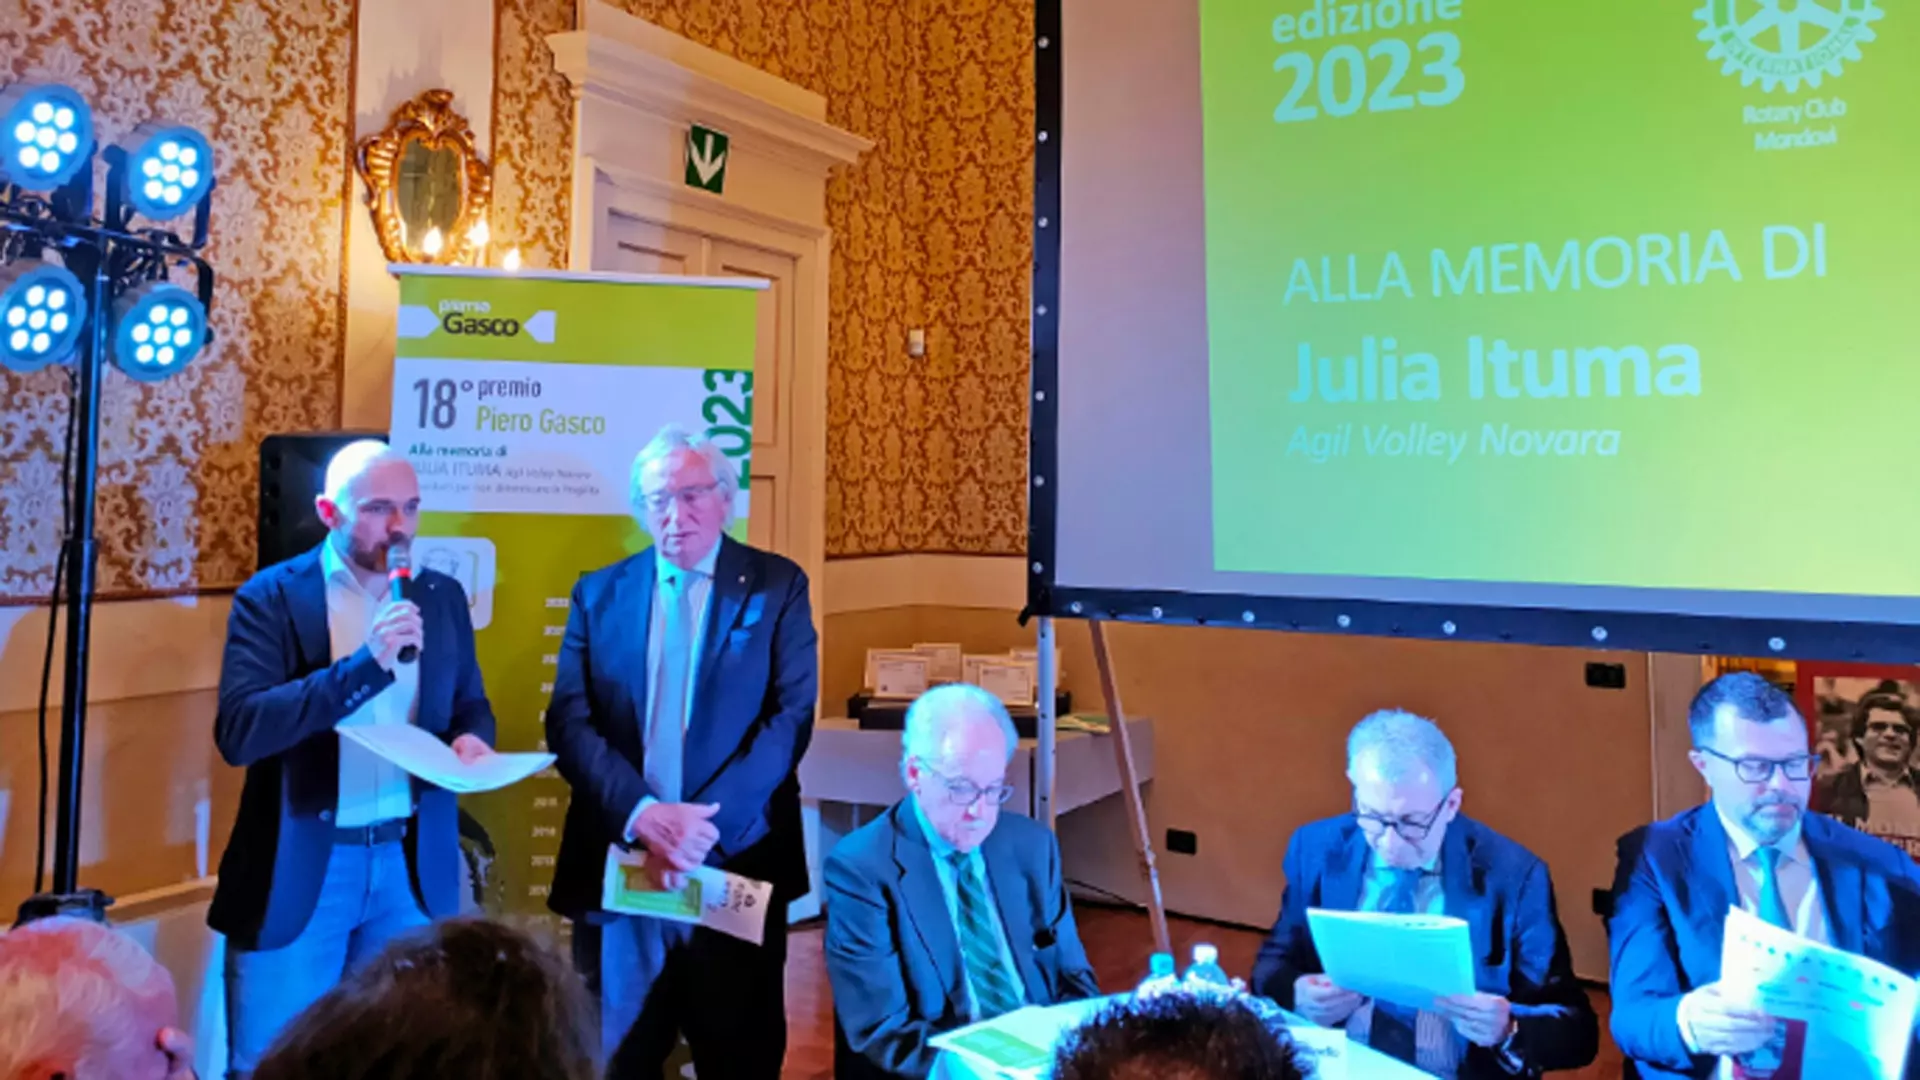 Il premio ‘Gasco’ 2023 va alla memoria di Julia Ituma